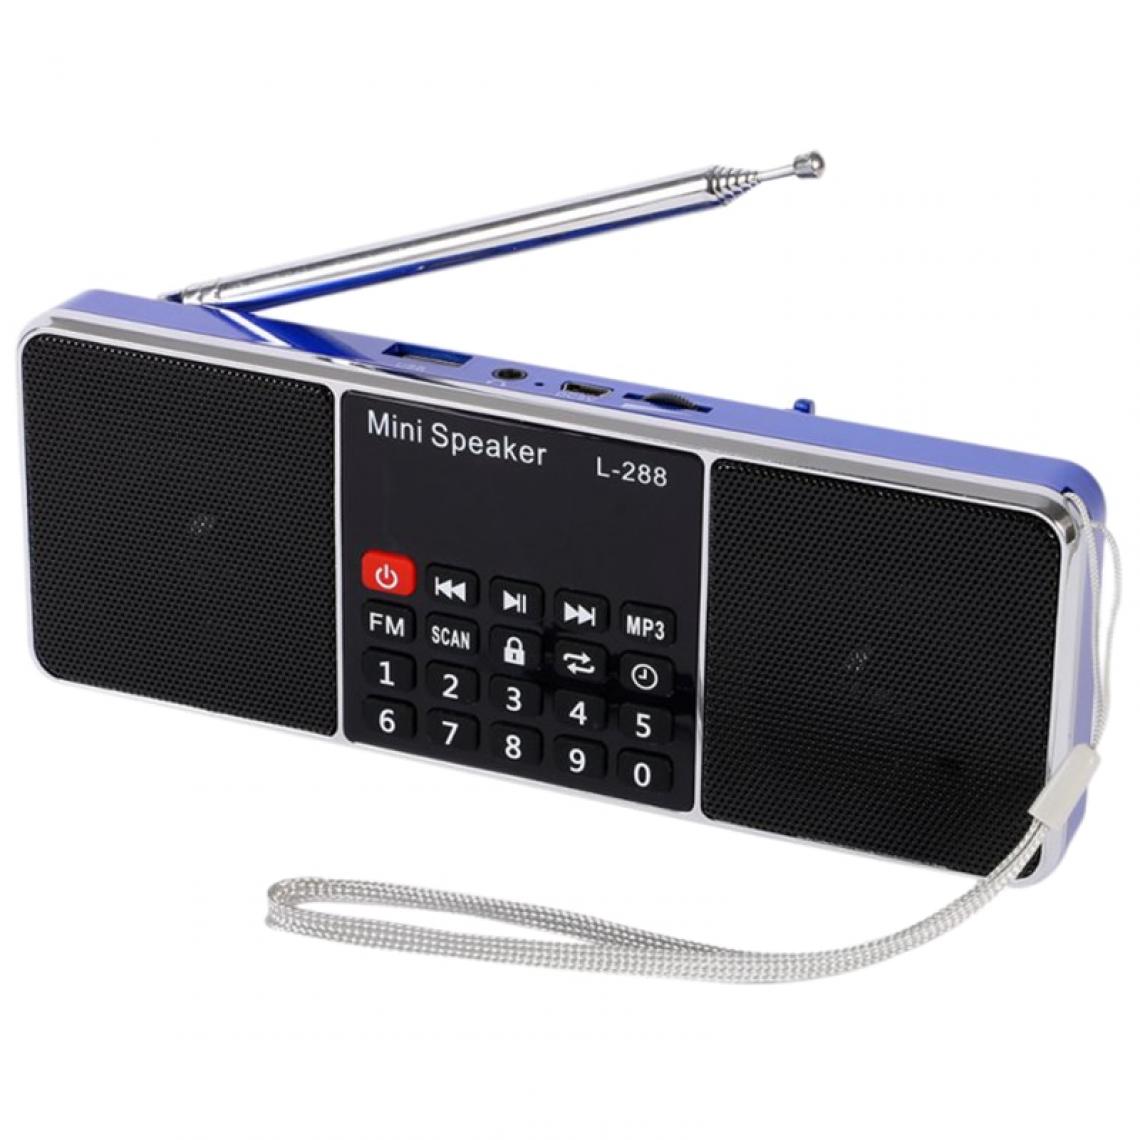 Universal - Mini haut-parleur portable rechargeable stéréo FM écran LCD support carte TF disque USB lecteur de musique MP3 haut-parleur (noir) - Enceinte PC